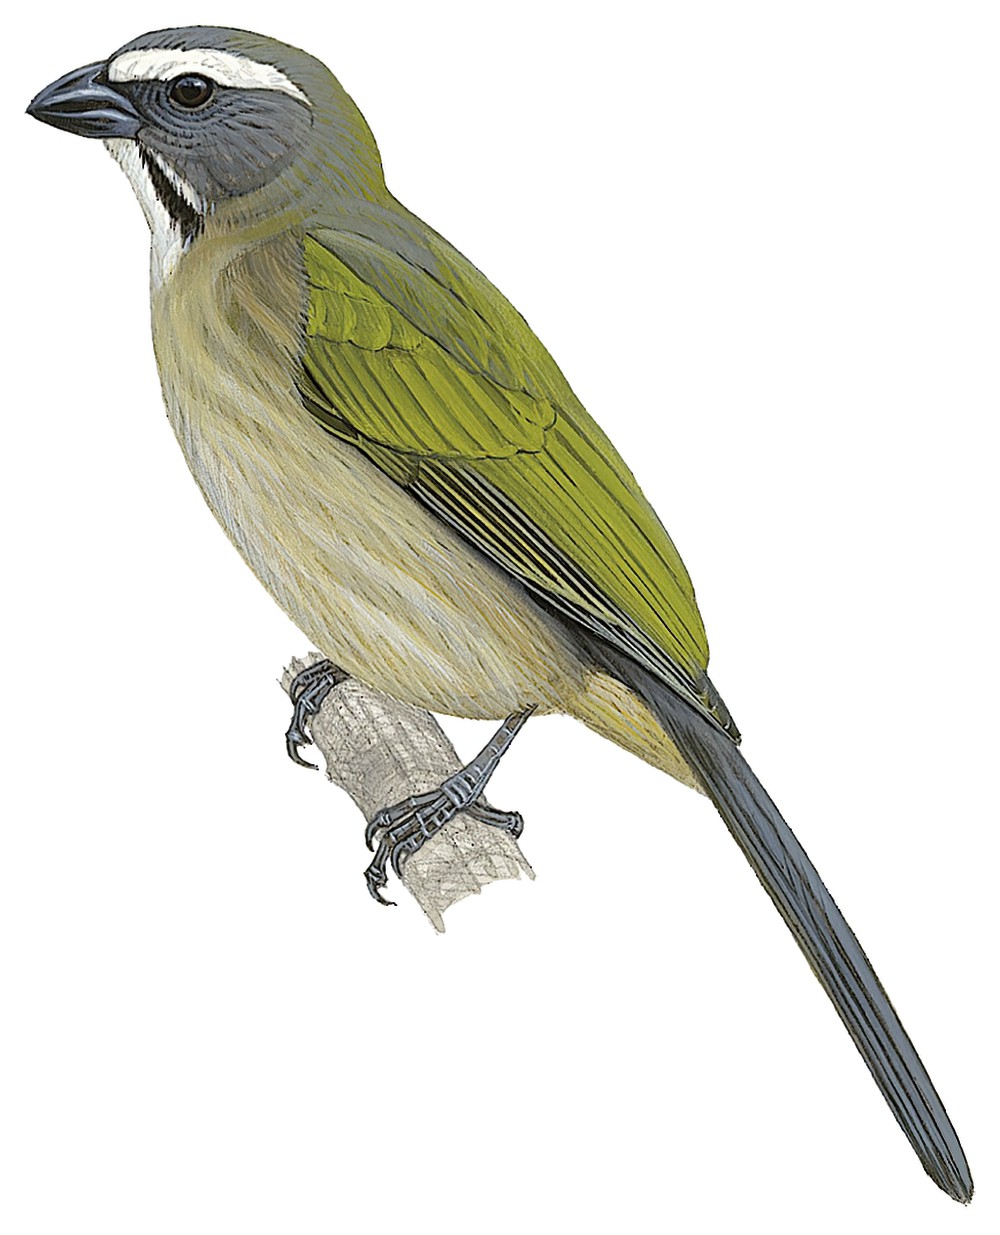 Green-winged Saltator / Saltator similis